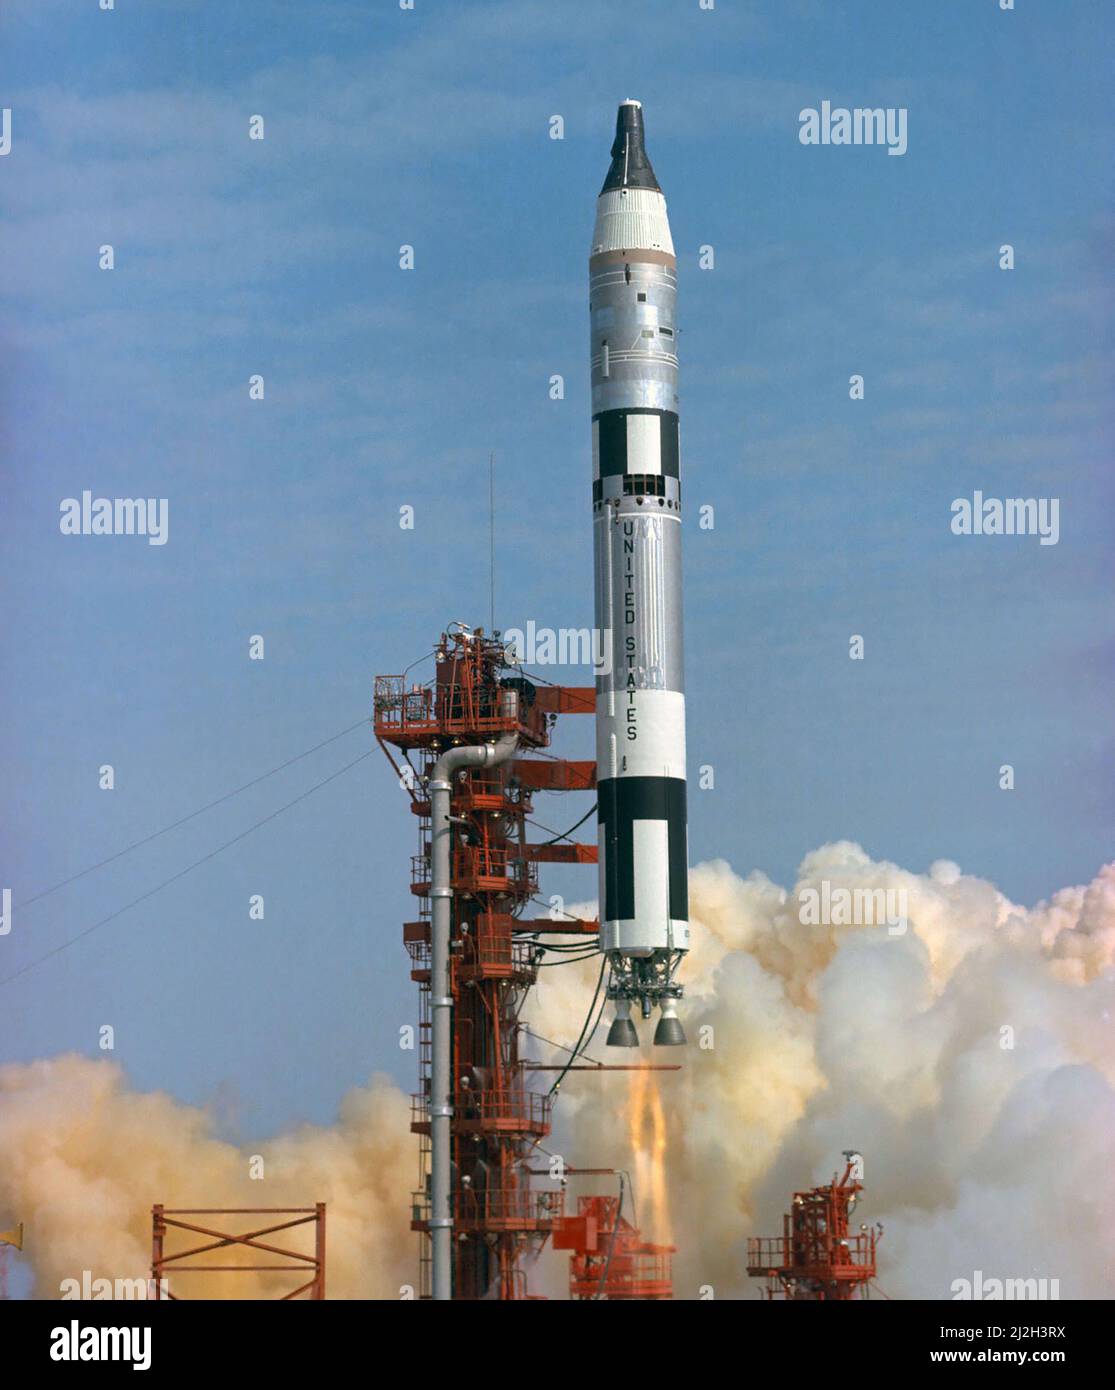 Lancio del primo volo gemini presidiato. Il Gemini-Titan 3 ha sollevato il pad 19 alle 9:24 (EST) il 23 marzo 1965. La navicella spaziale Gemini-3 'Molly Brown' portò gli astronauti Virgilio I. Grissom, pilota di comando, e John W. Young, pilota, su tre orbite della Terra. Foto Stock